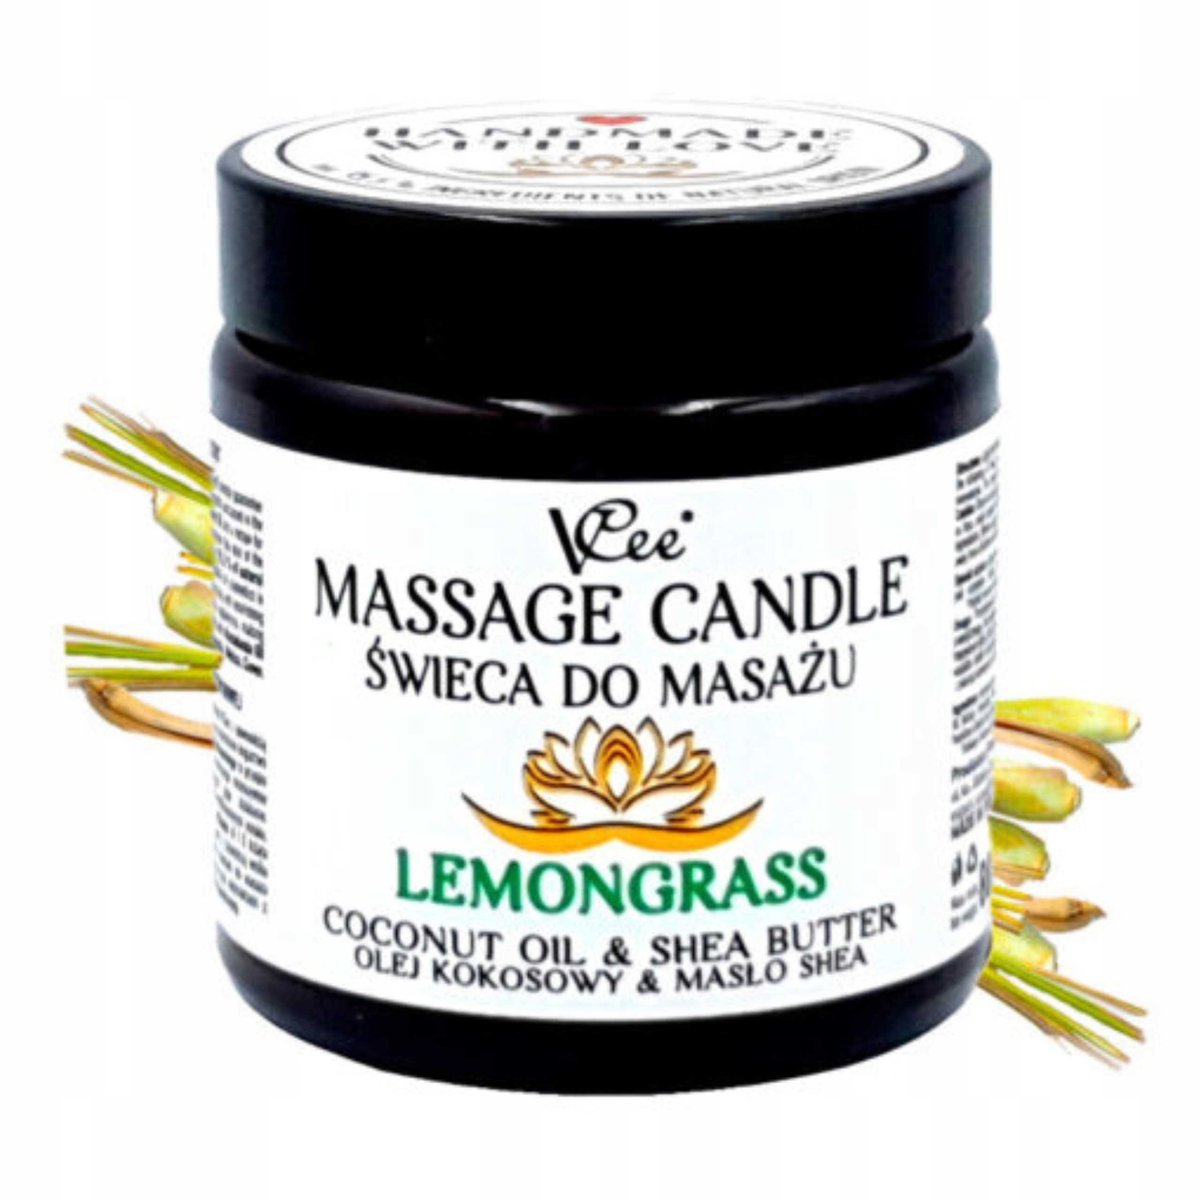 Nawilżająca świeca do masażu VCee 80 g - różne zapachy - Lemongrass